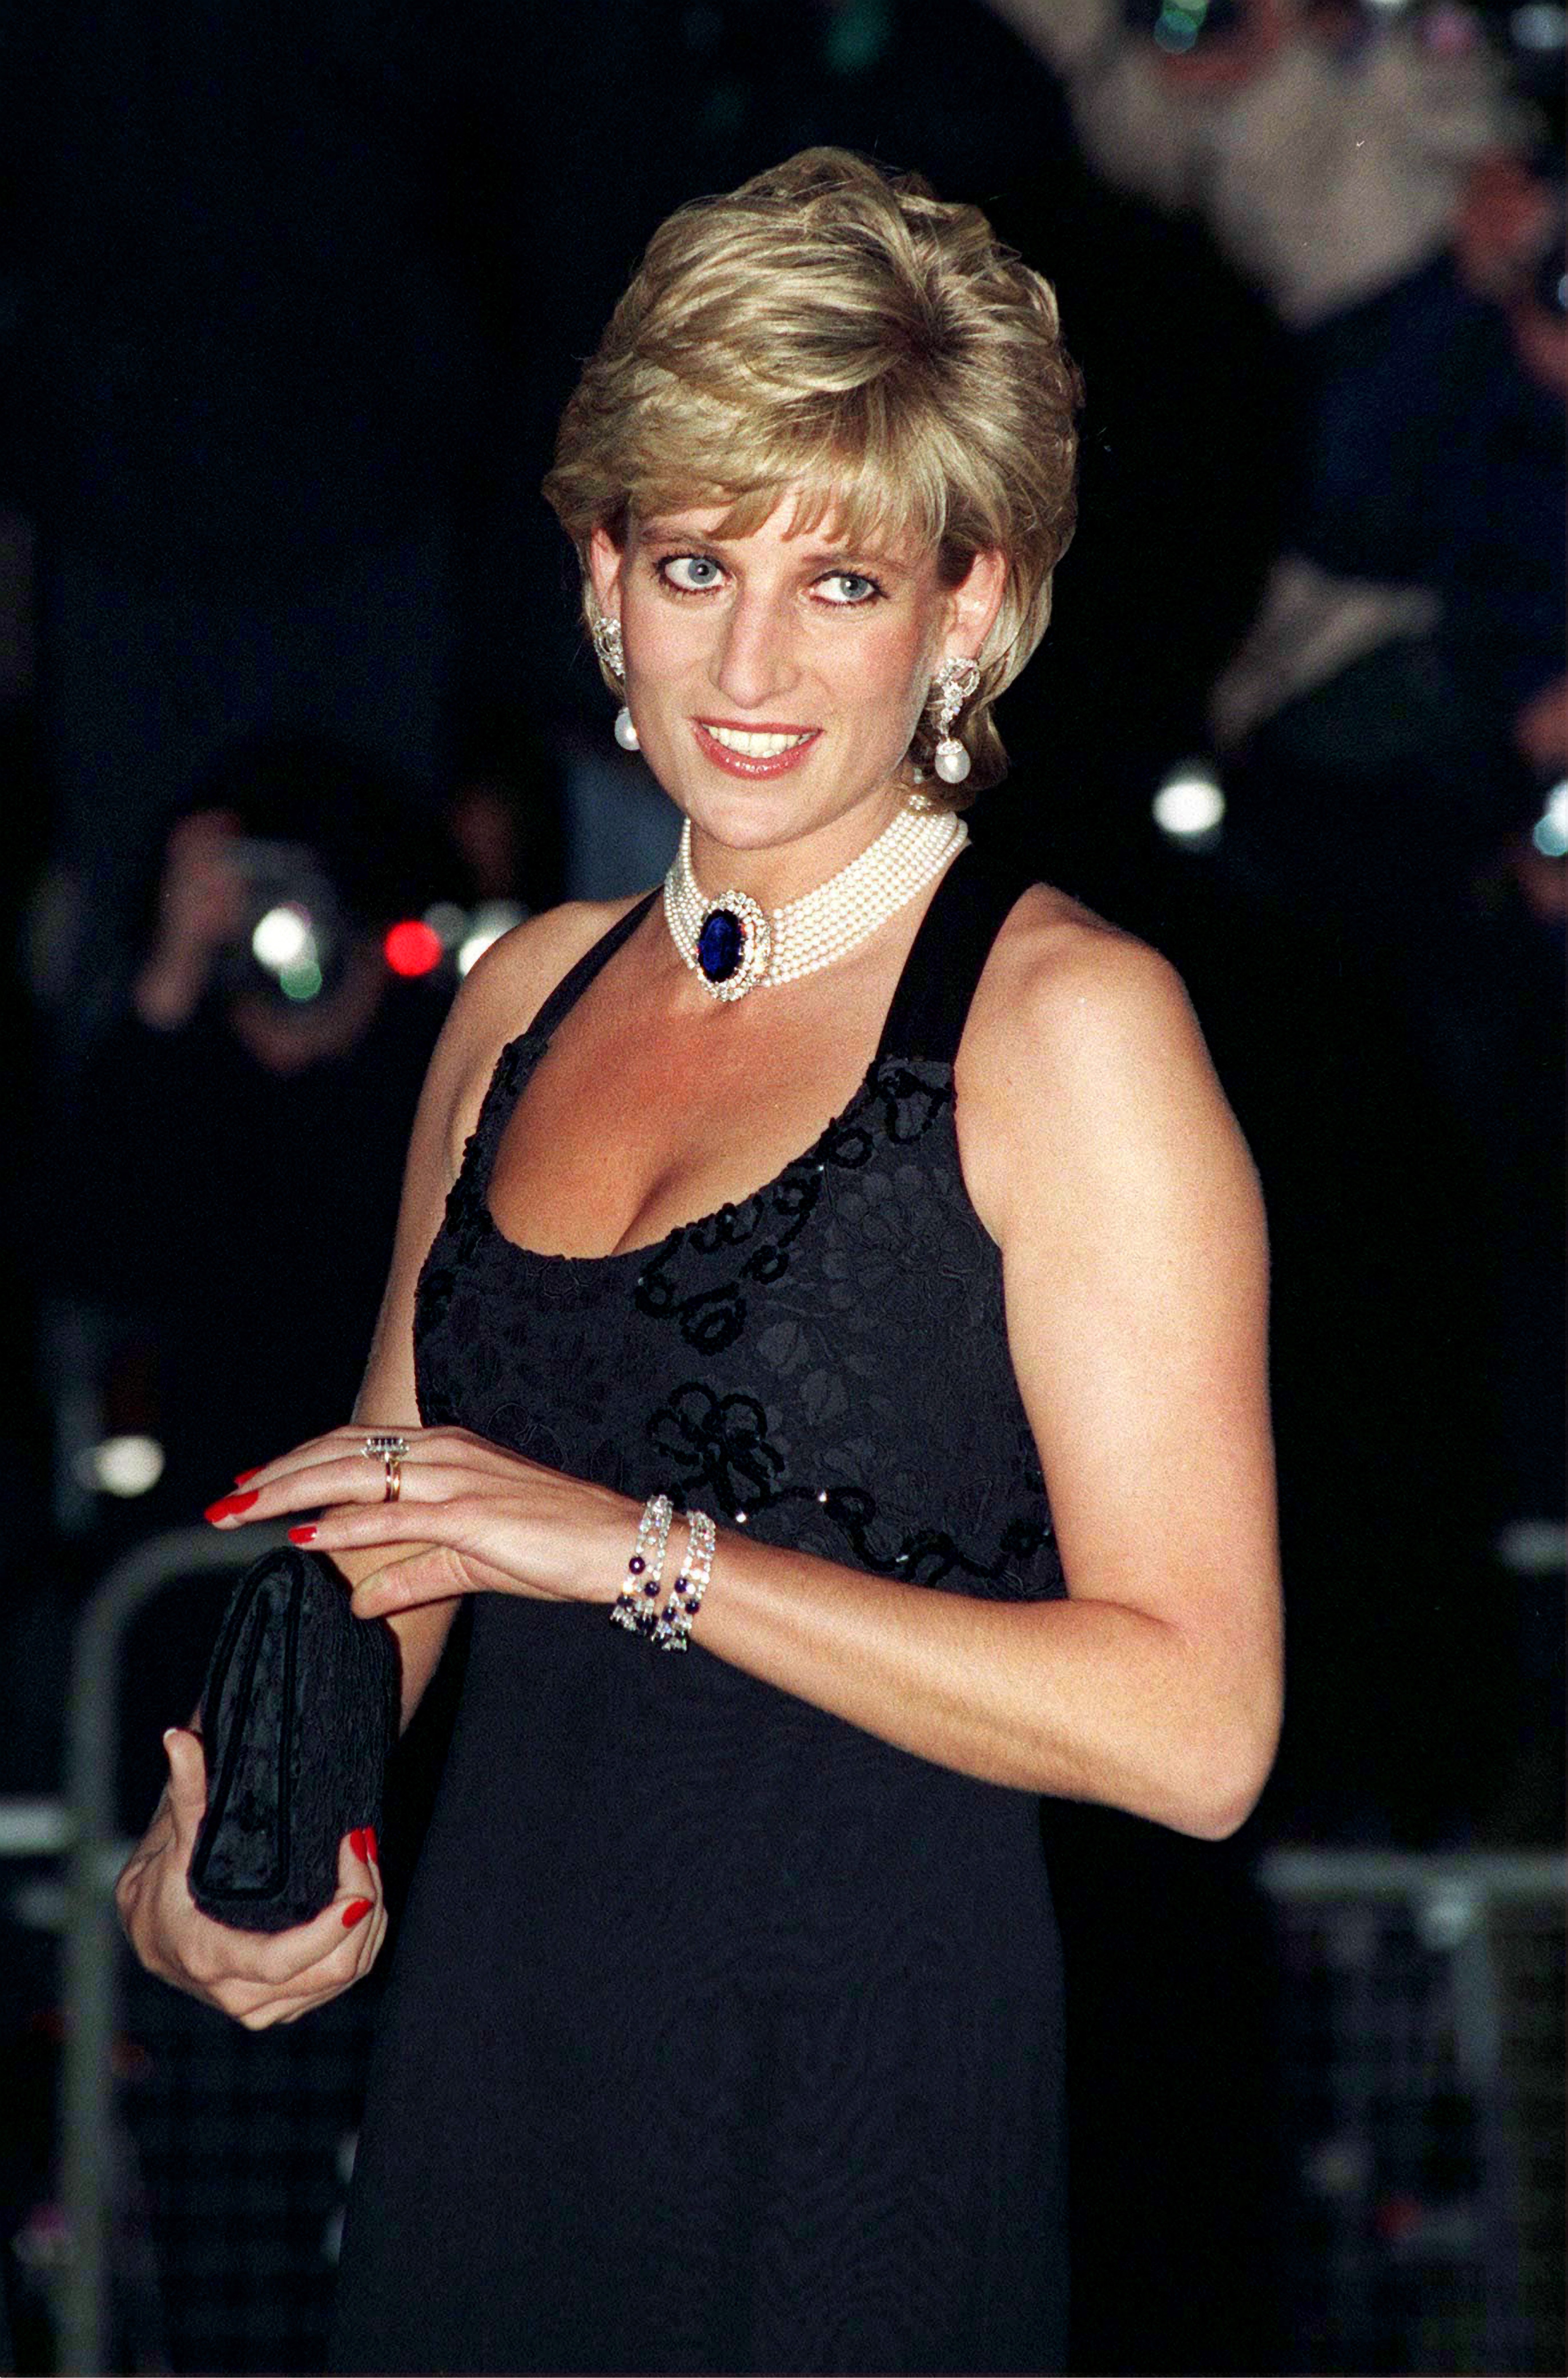 Prinzessin Diana in London im Jahr 1995. | Quelle: Getty Images